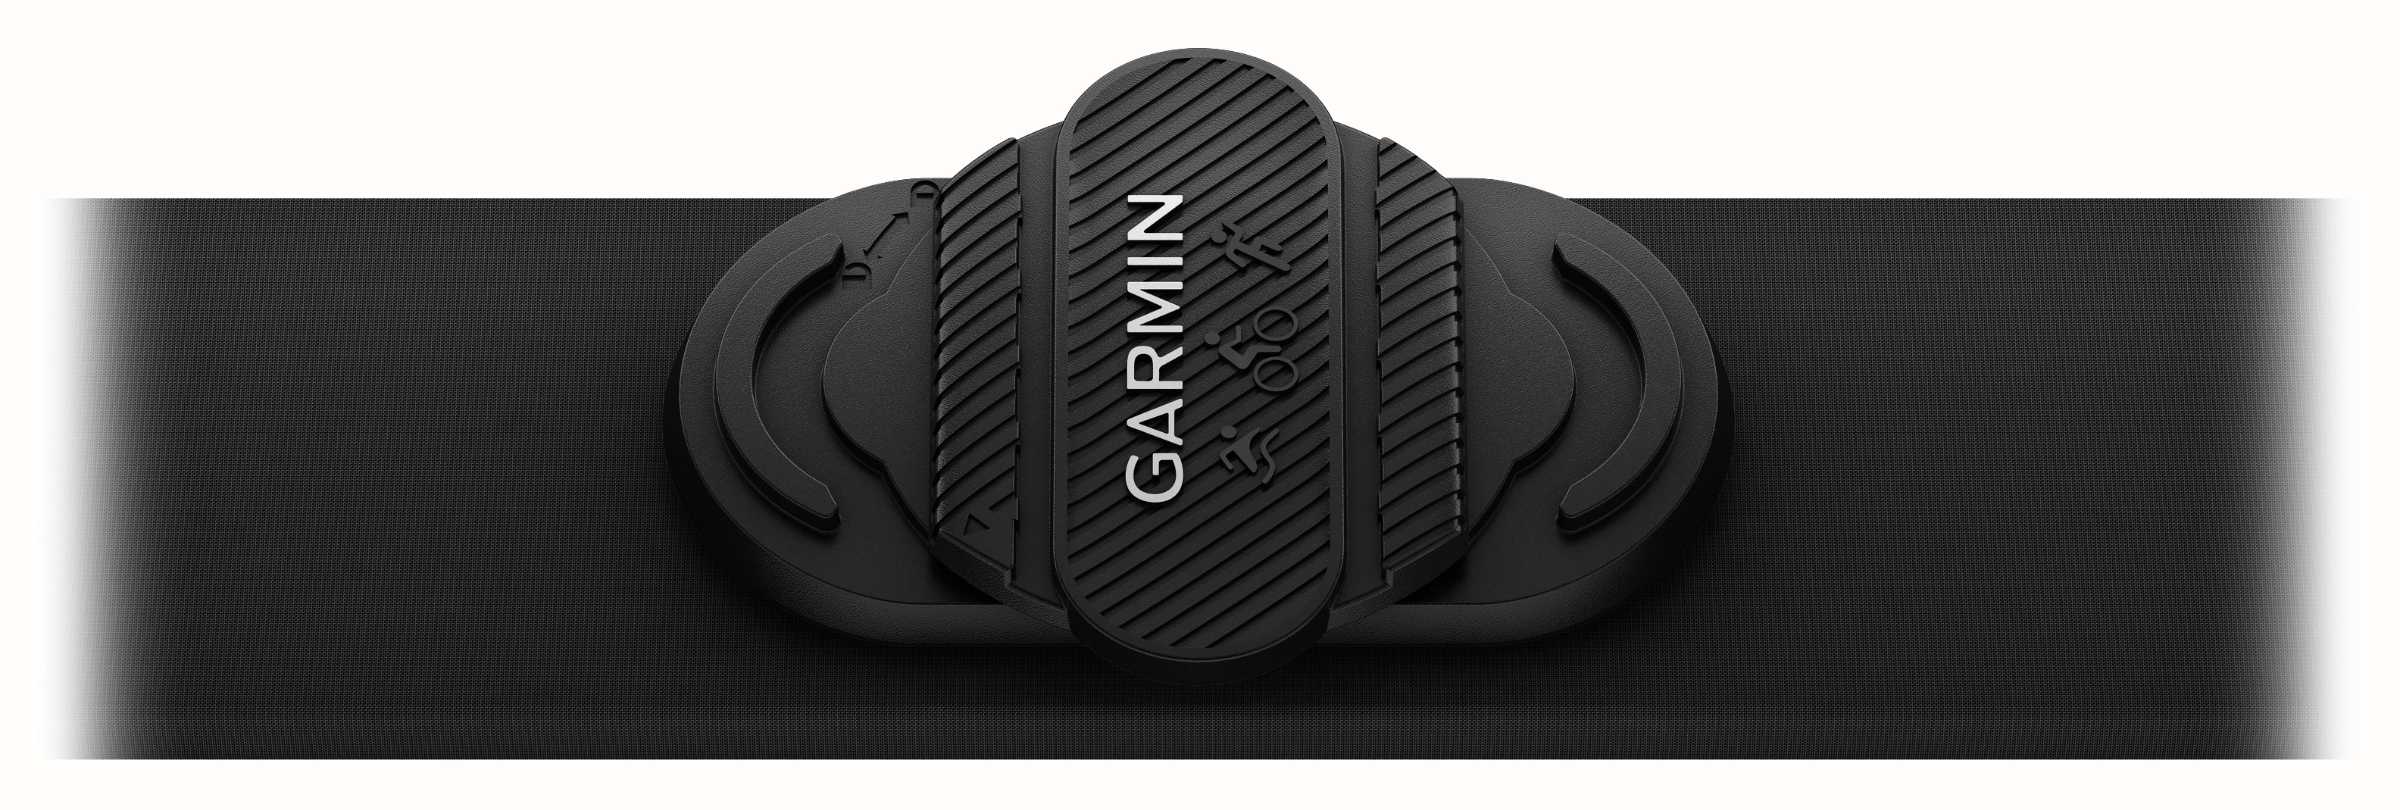  Garmin HRM-Pro Plus Premium Chest Strap Heart Rate